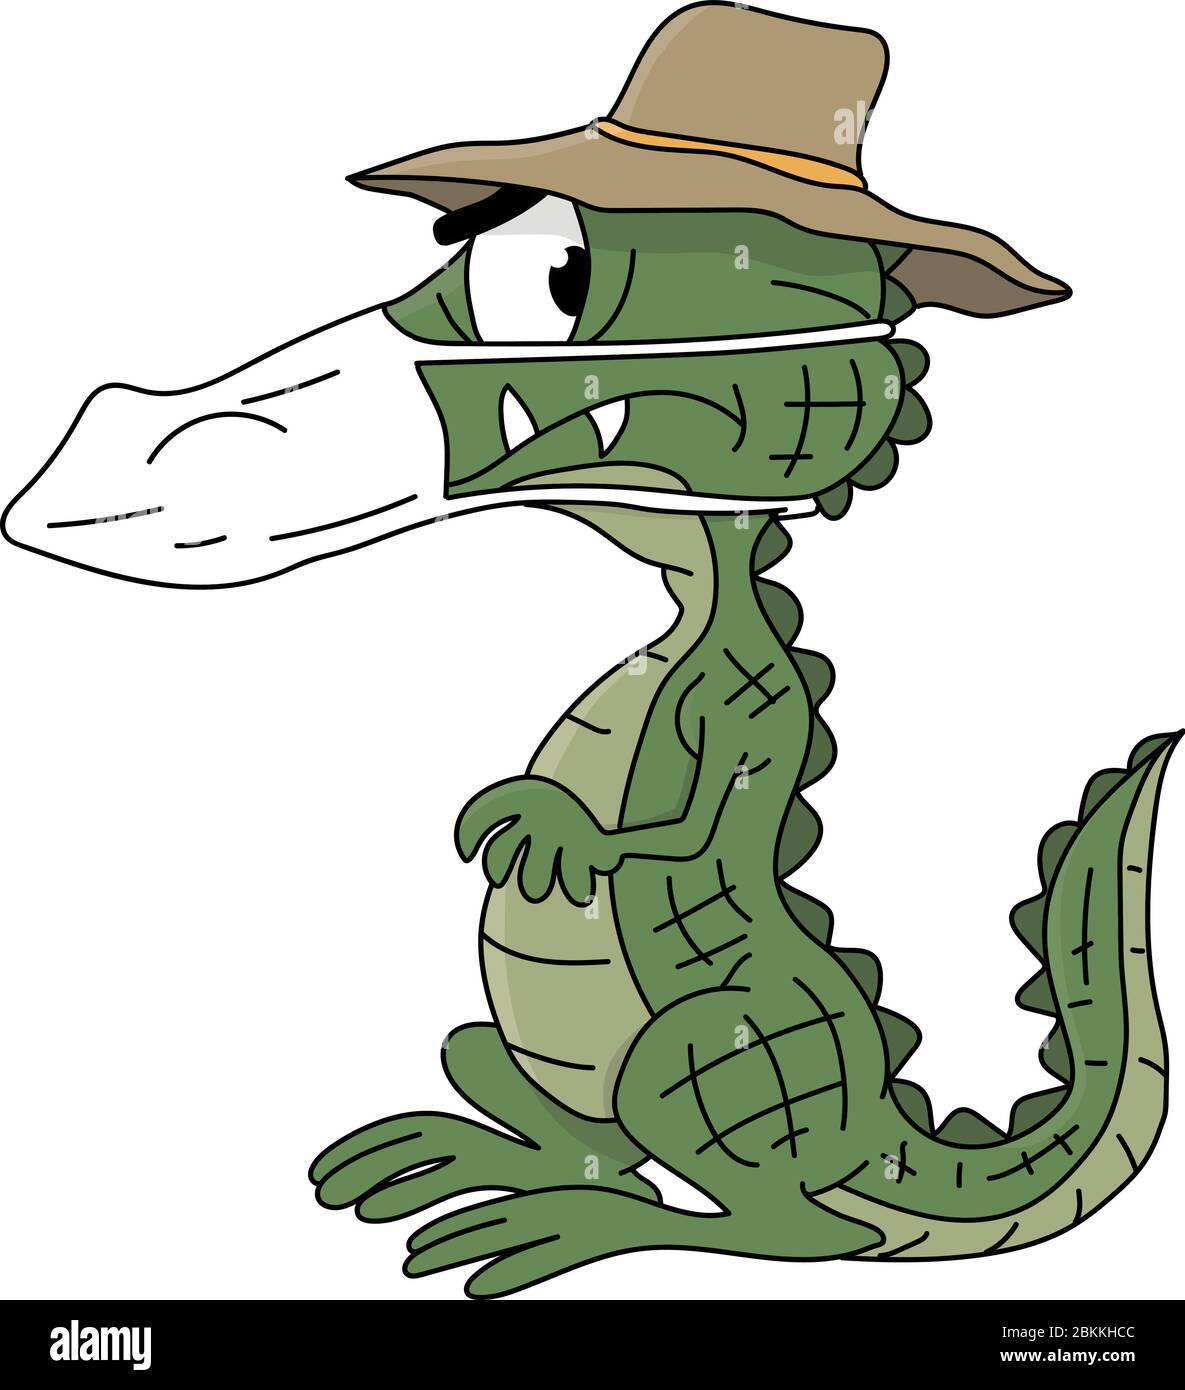 Dessin animé alligator portant un masque de protection contre le virus corona illustration vecteur Illustration de Vecteur